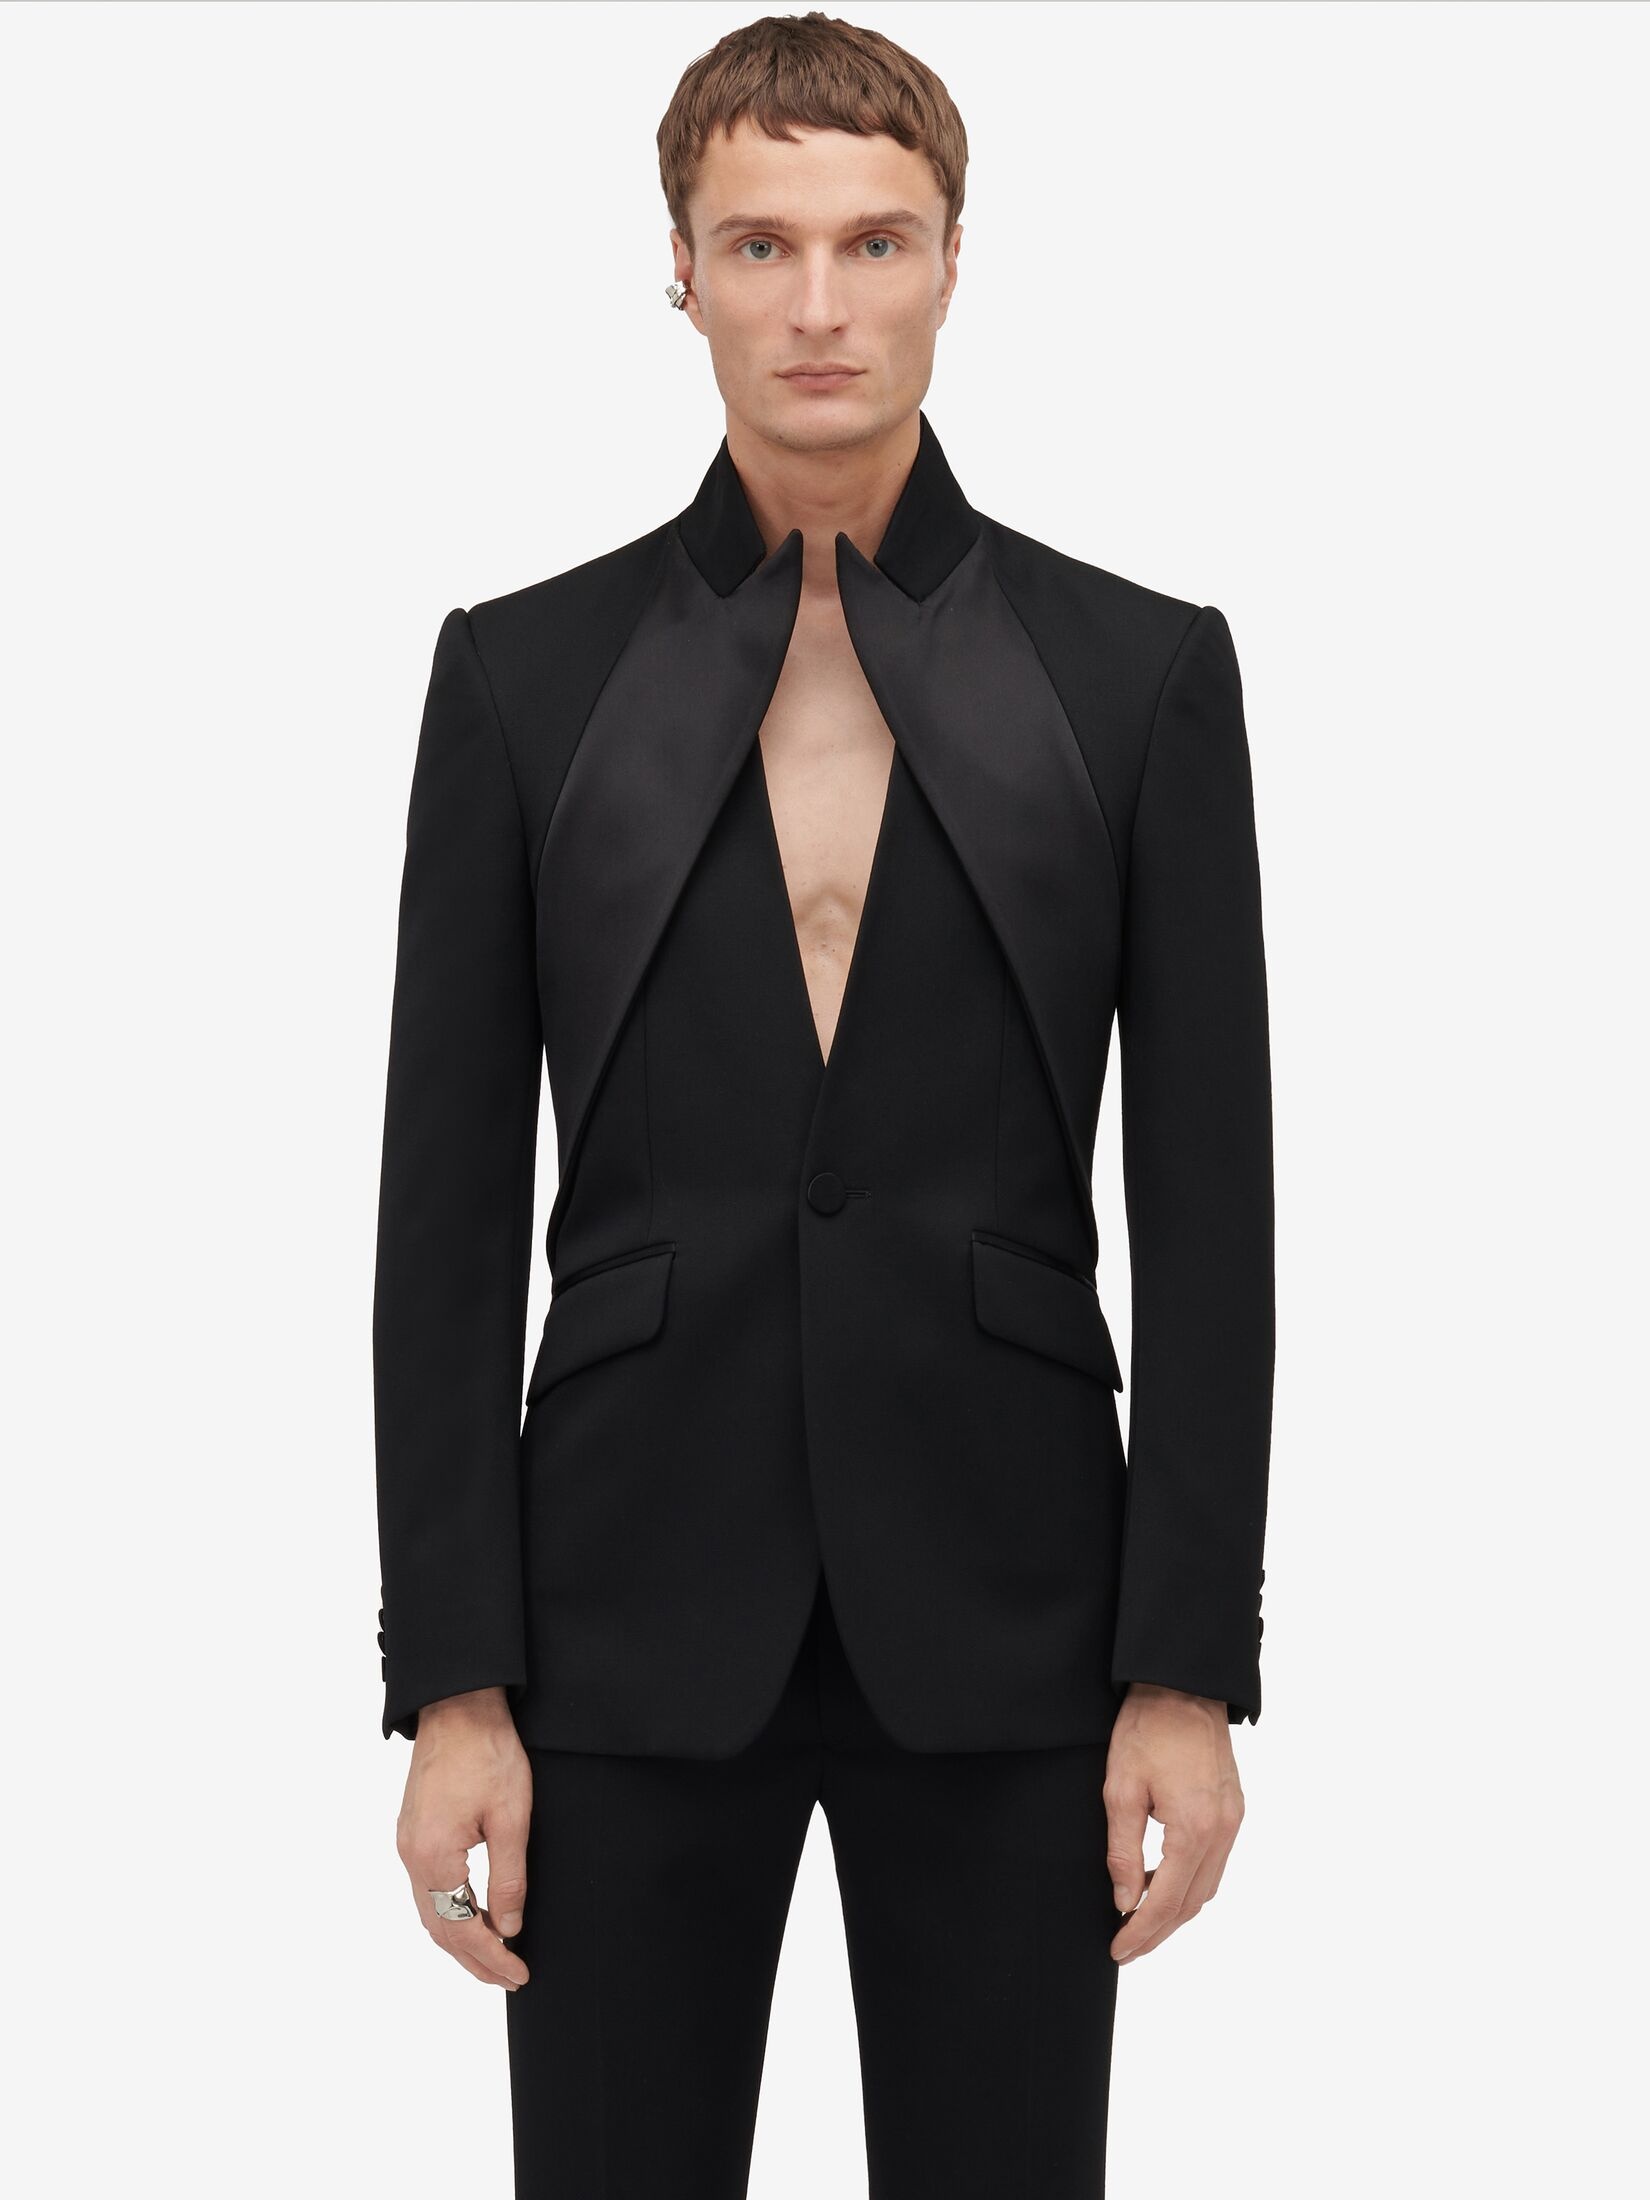 Men's Twisted Lapel Tuxedo Jacket in Black - 5